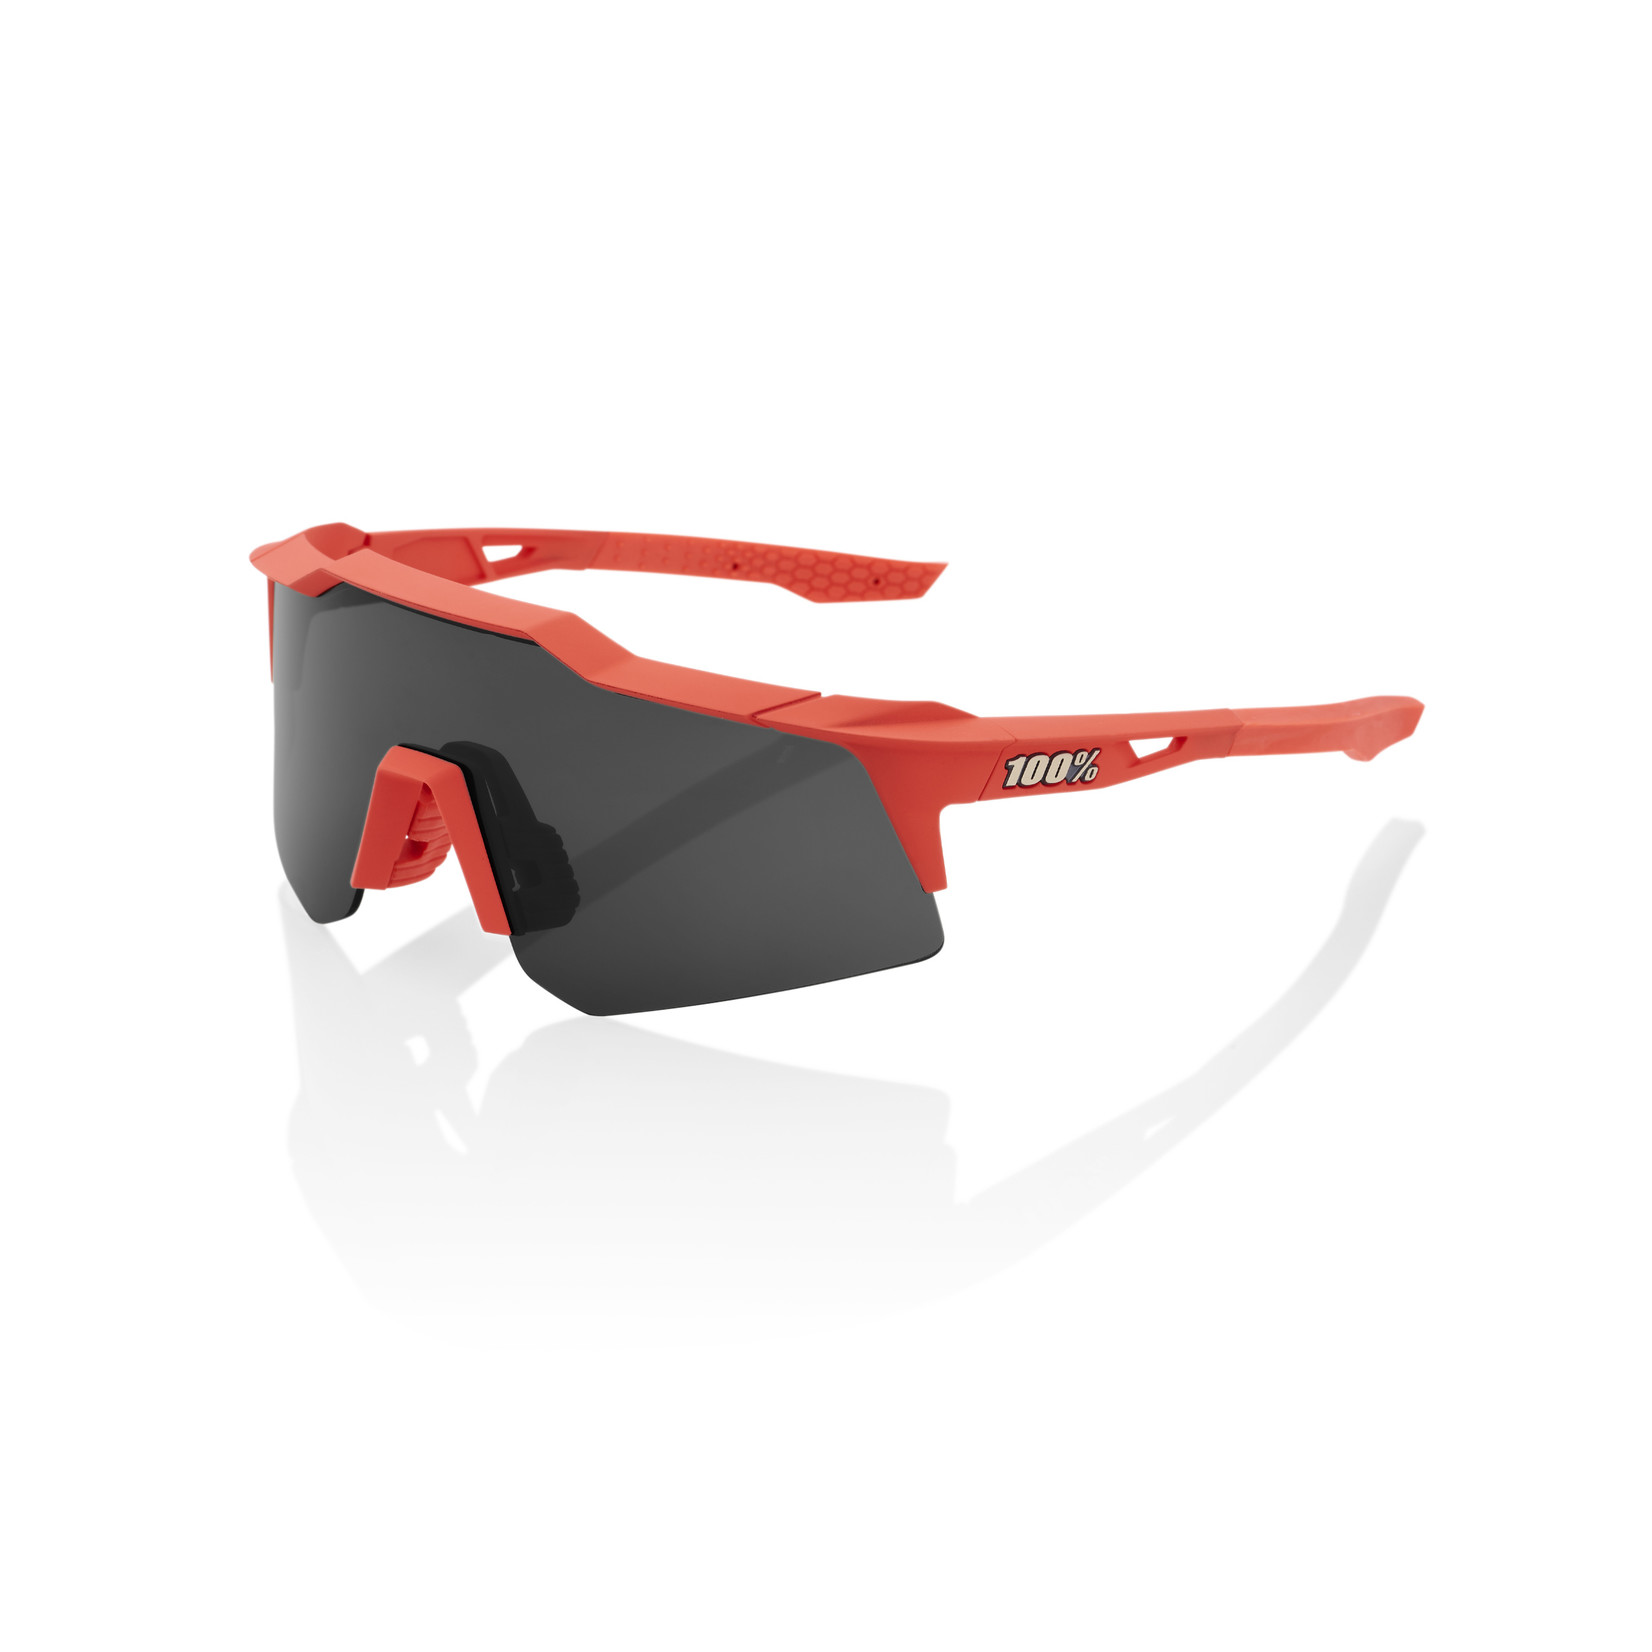 1 100% Speedcraft XS Bike Sunglasses Soft Tact Coral - Smoke